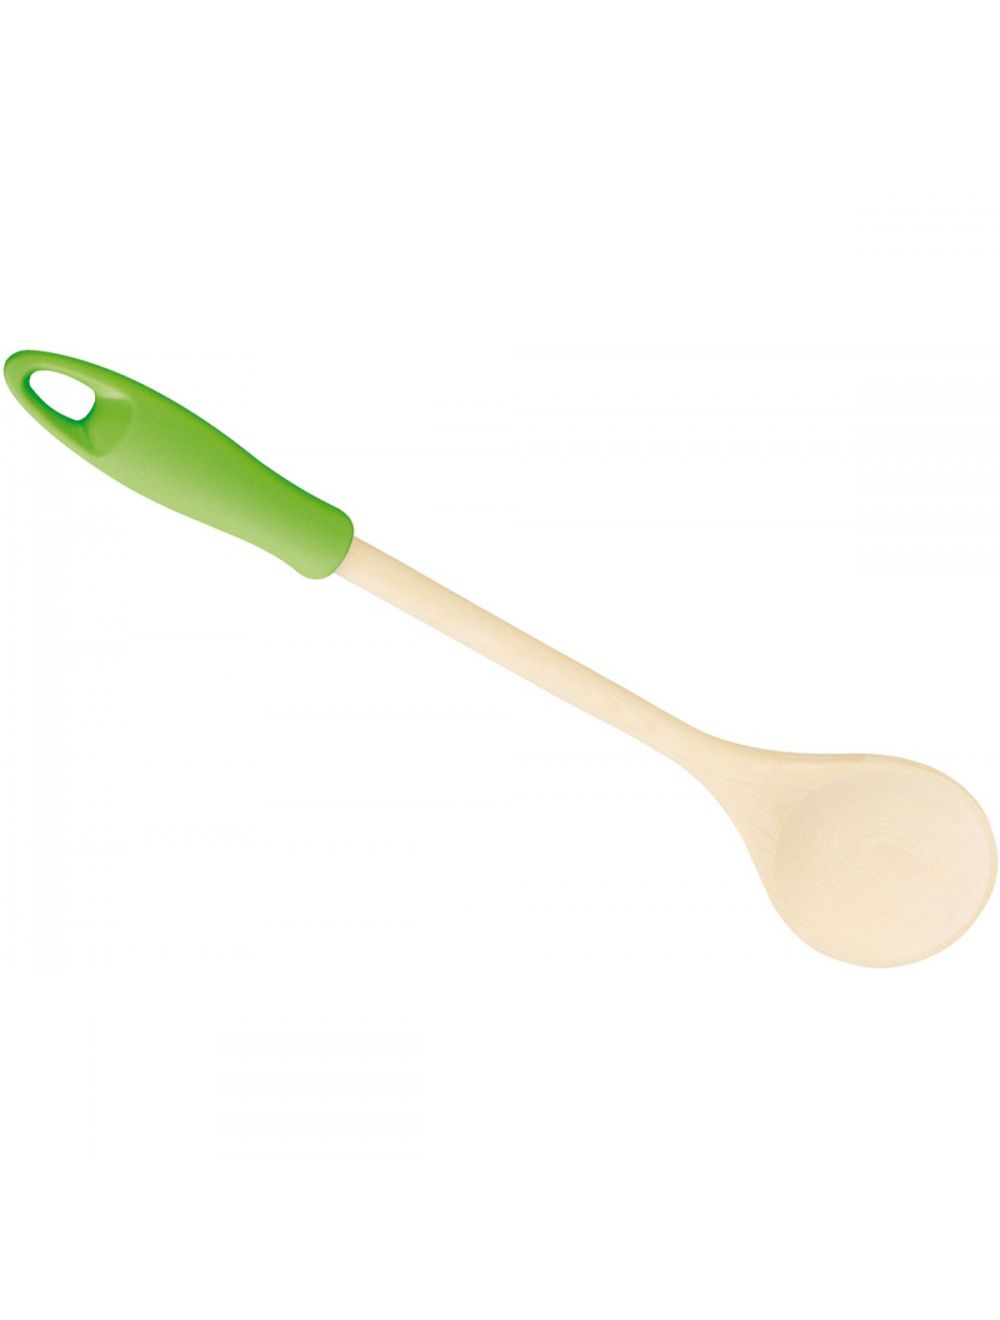 Round Stirring Wooden Spoon